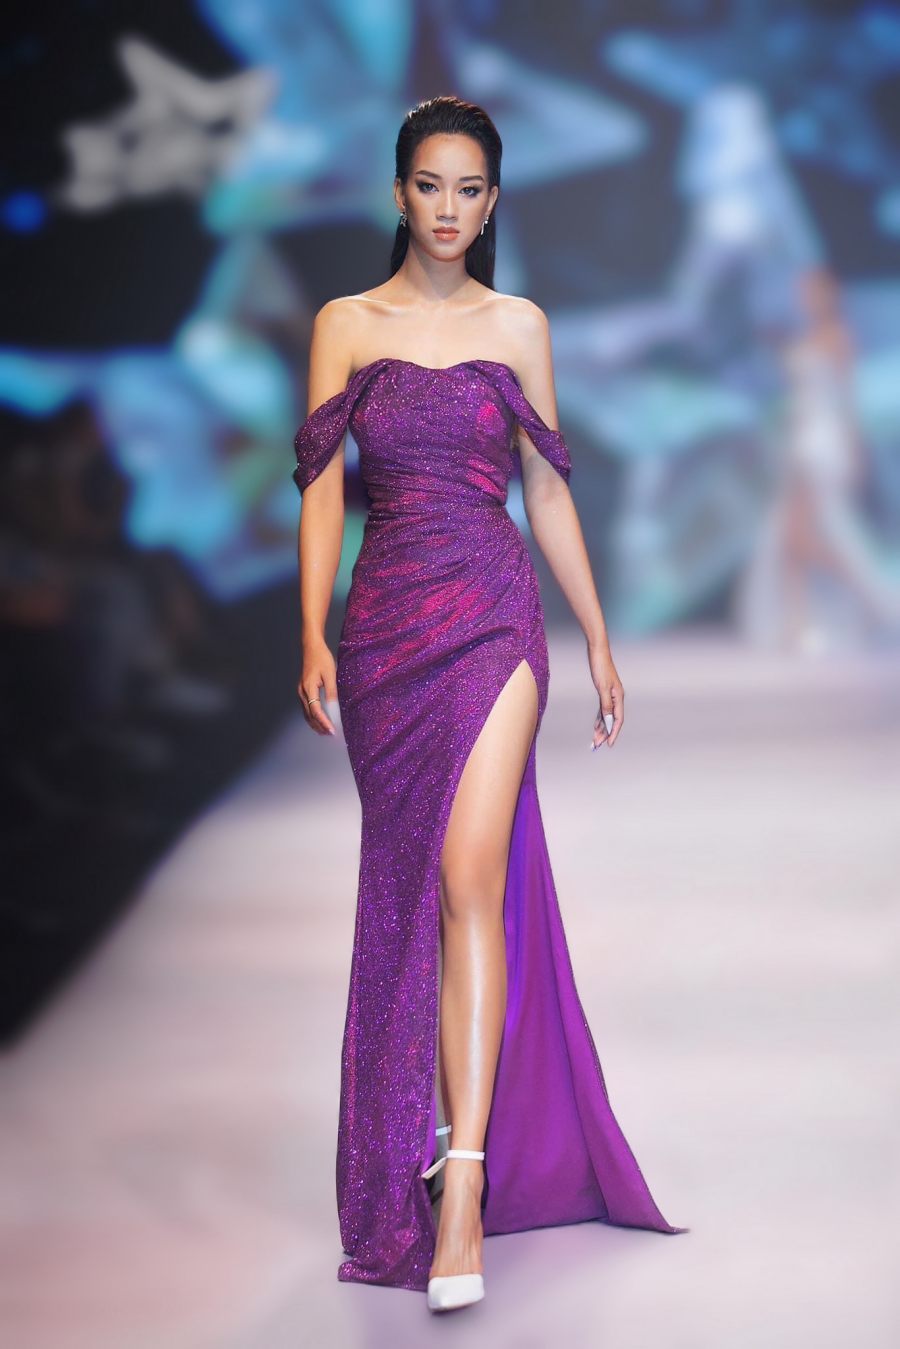 Nữ sinh Đà Nẵng có nhan sắc giống Đỗ Hà gây chú ý khi thi Hoa hậu Hoà bình Việt Nam - 9